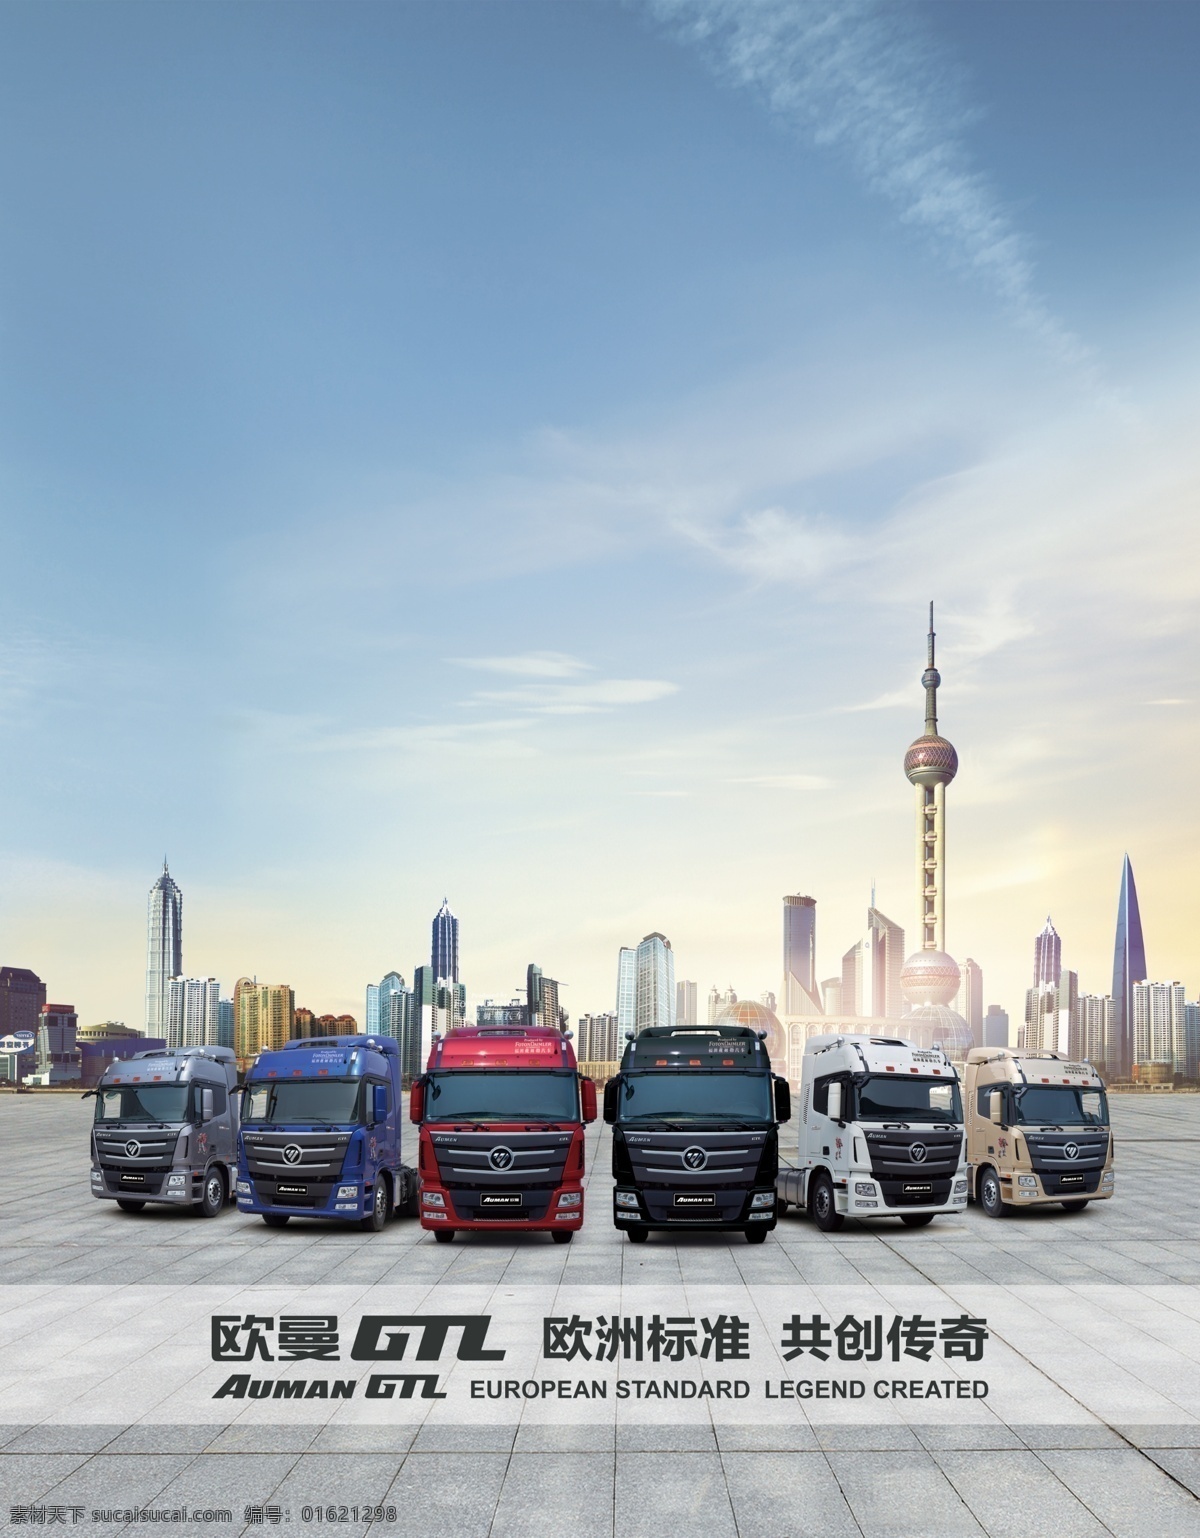 gtl 上海 车 阵 欧曼gtl 车阵 重卡 高端重卡 物流 广告设计模板 源文件